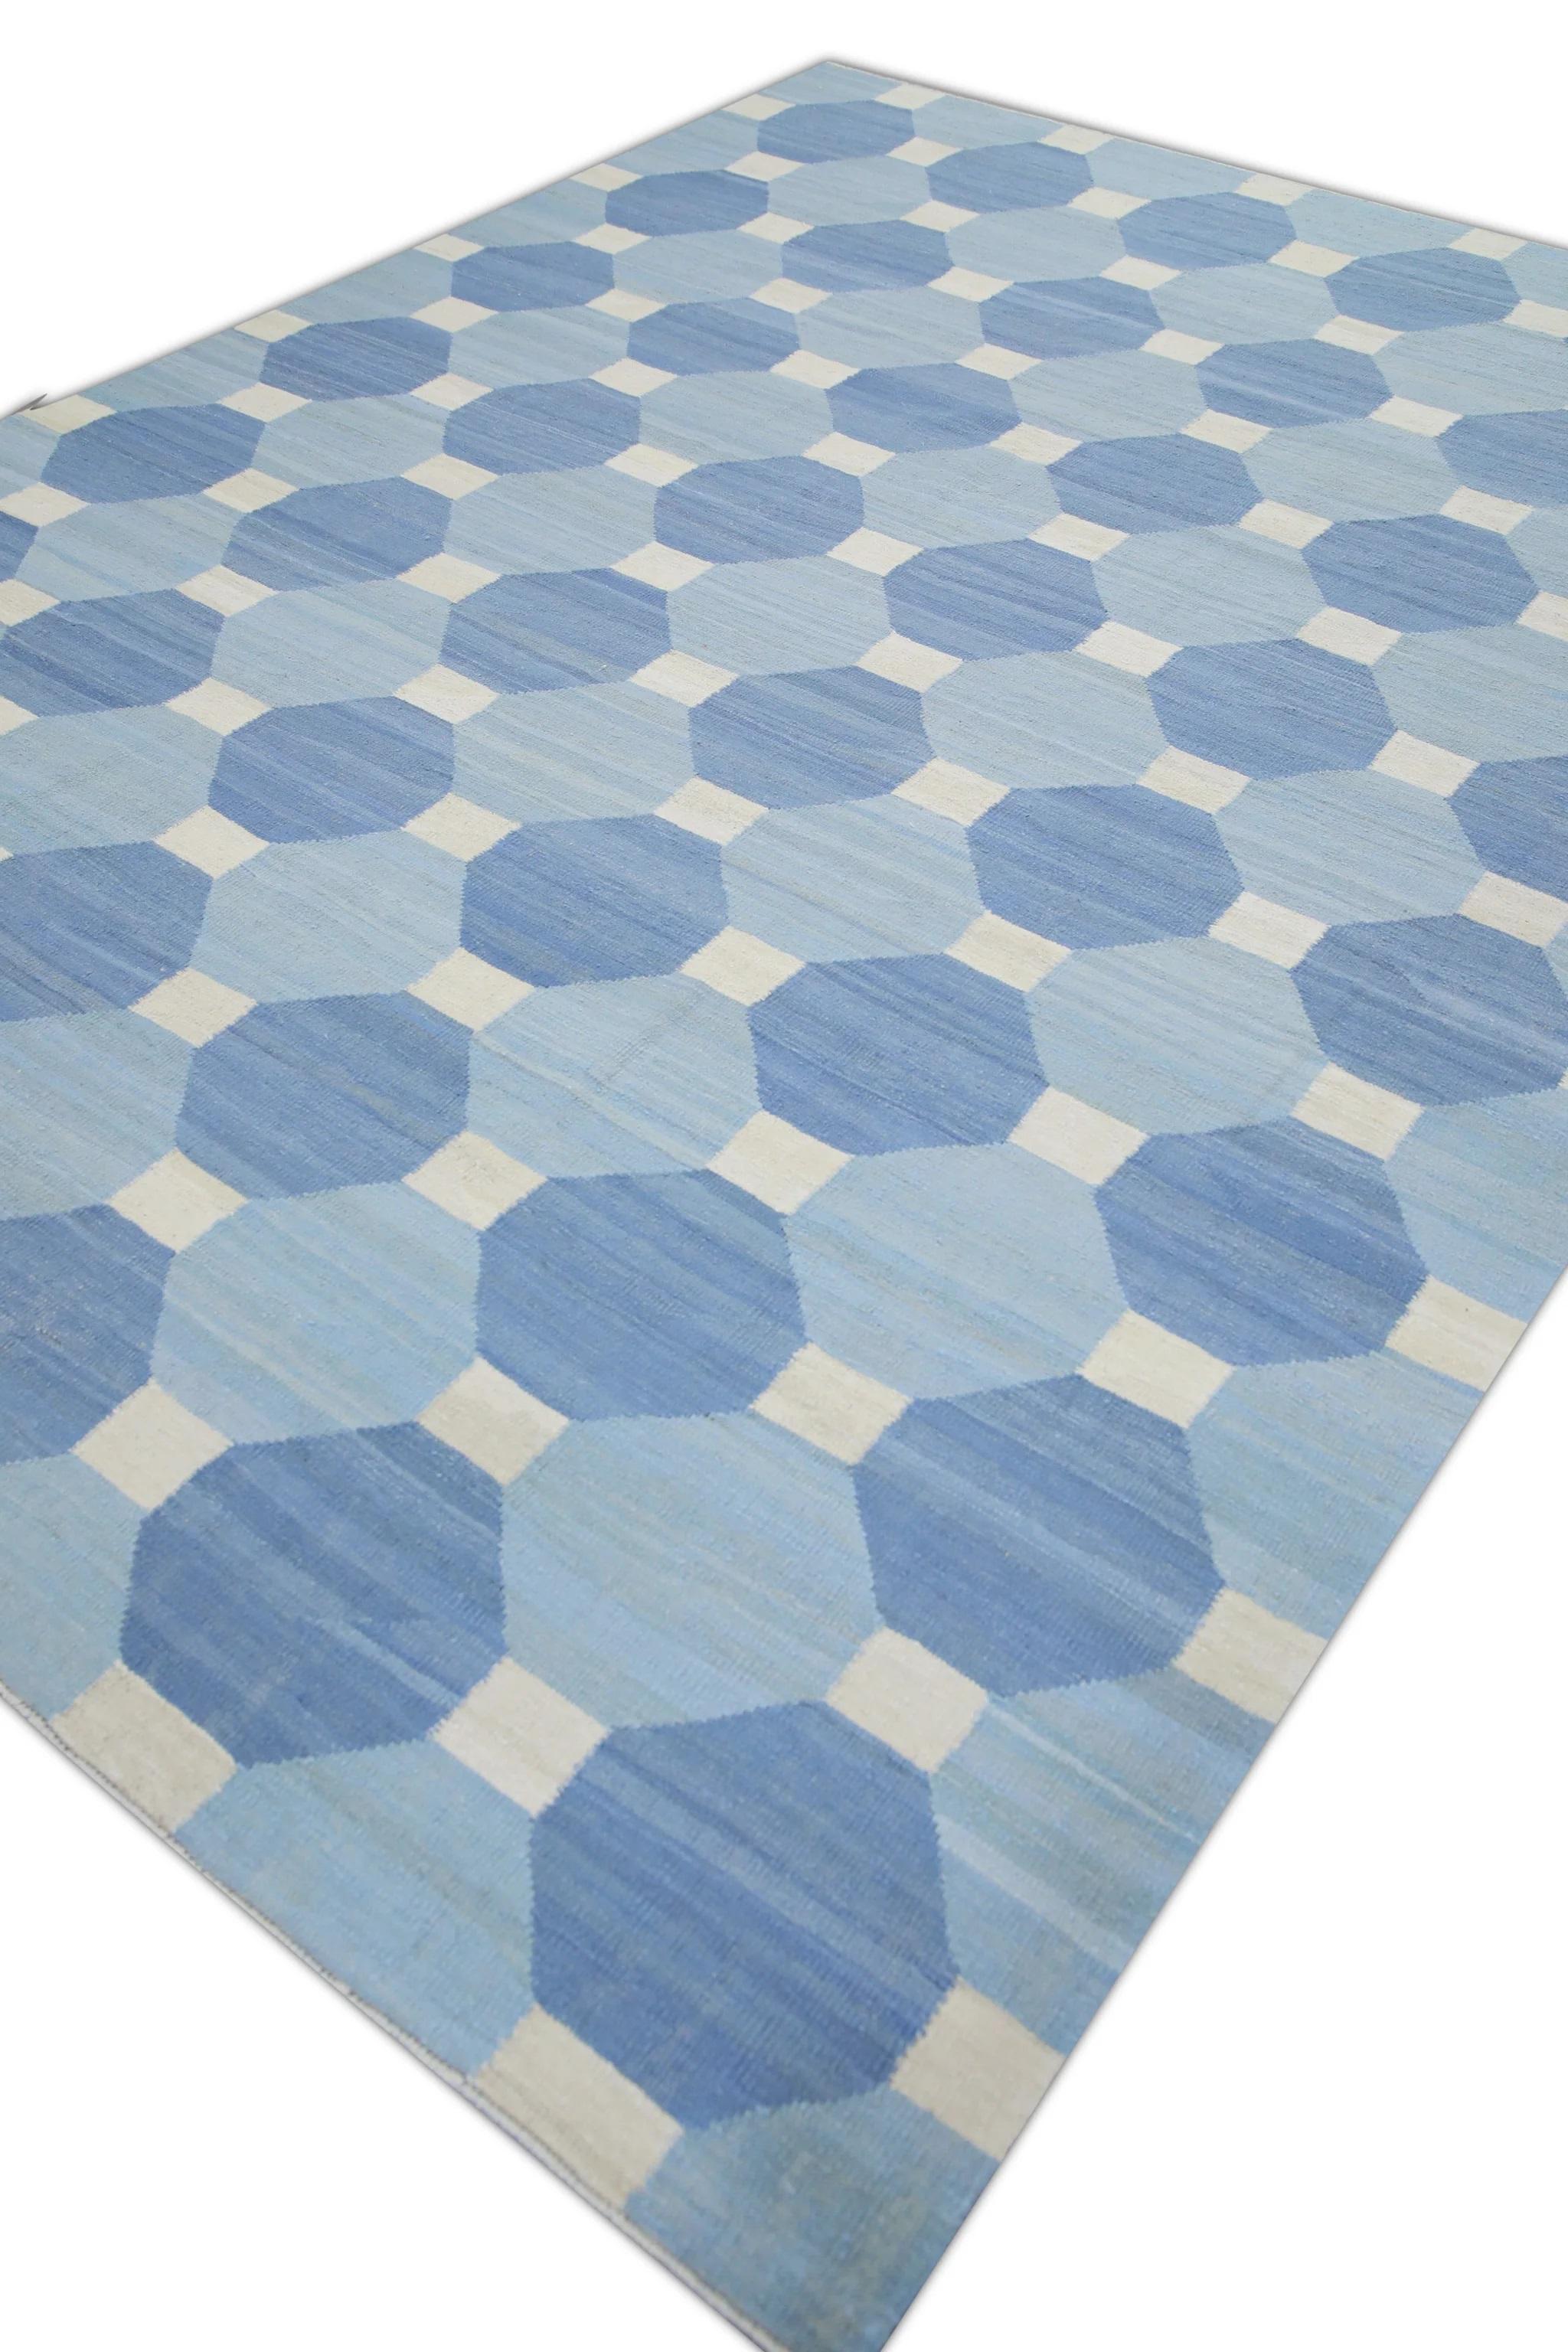 Vegetable Dyed Blue Geometric Design Flatweave Handmade Wool Rug 8'9